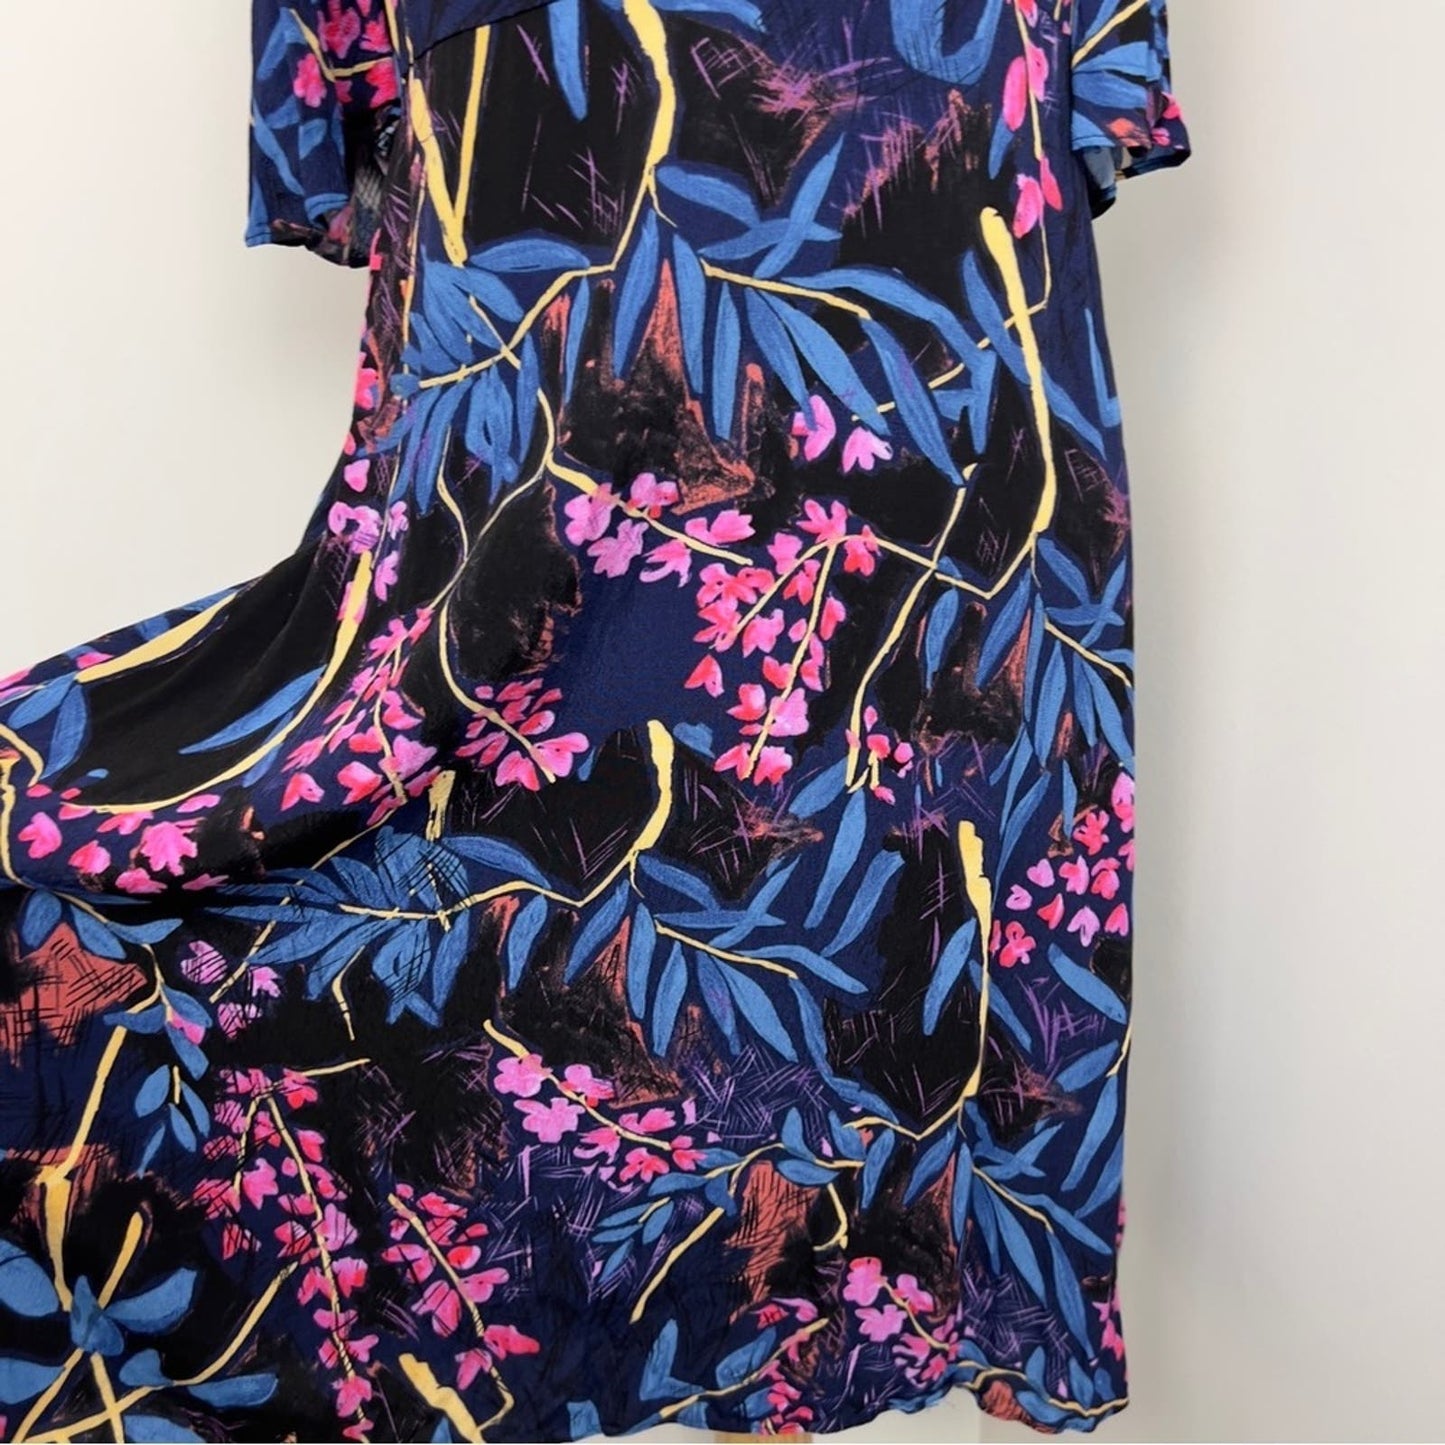 Anthropology ✨Maeve ✨ Elia Cold Shoulder Floral Print A line Dress size 6 (102)